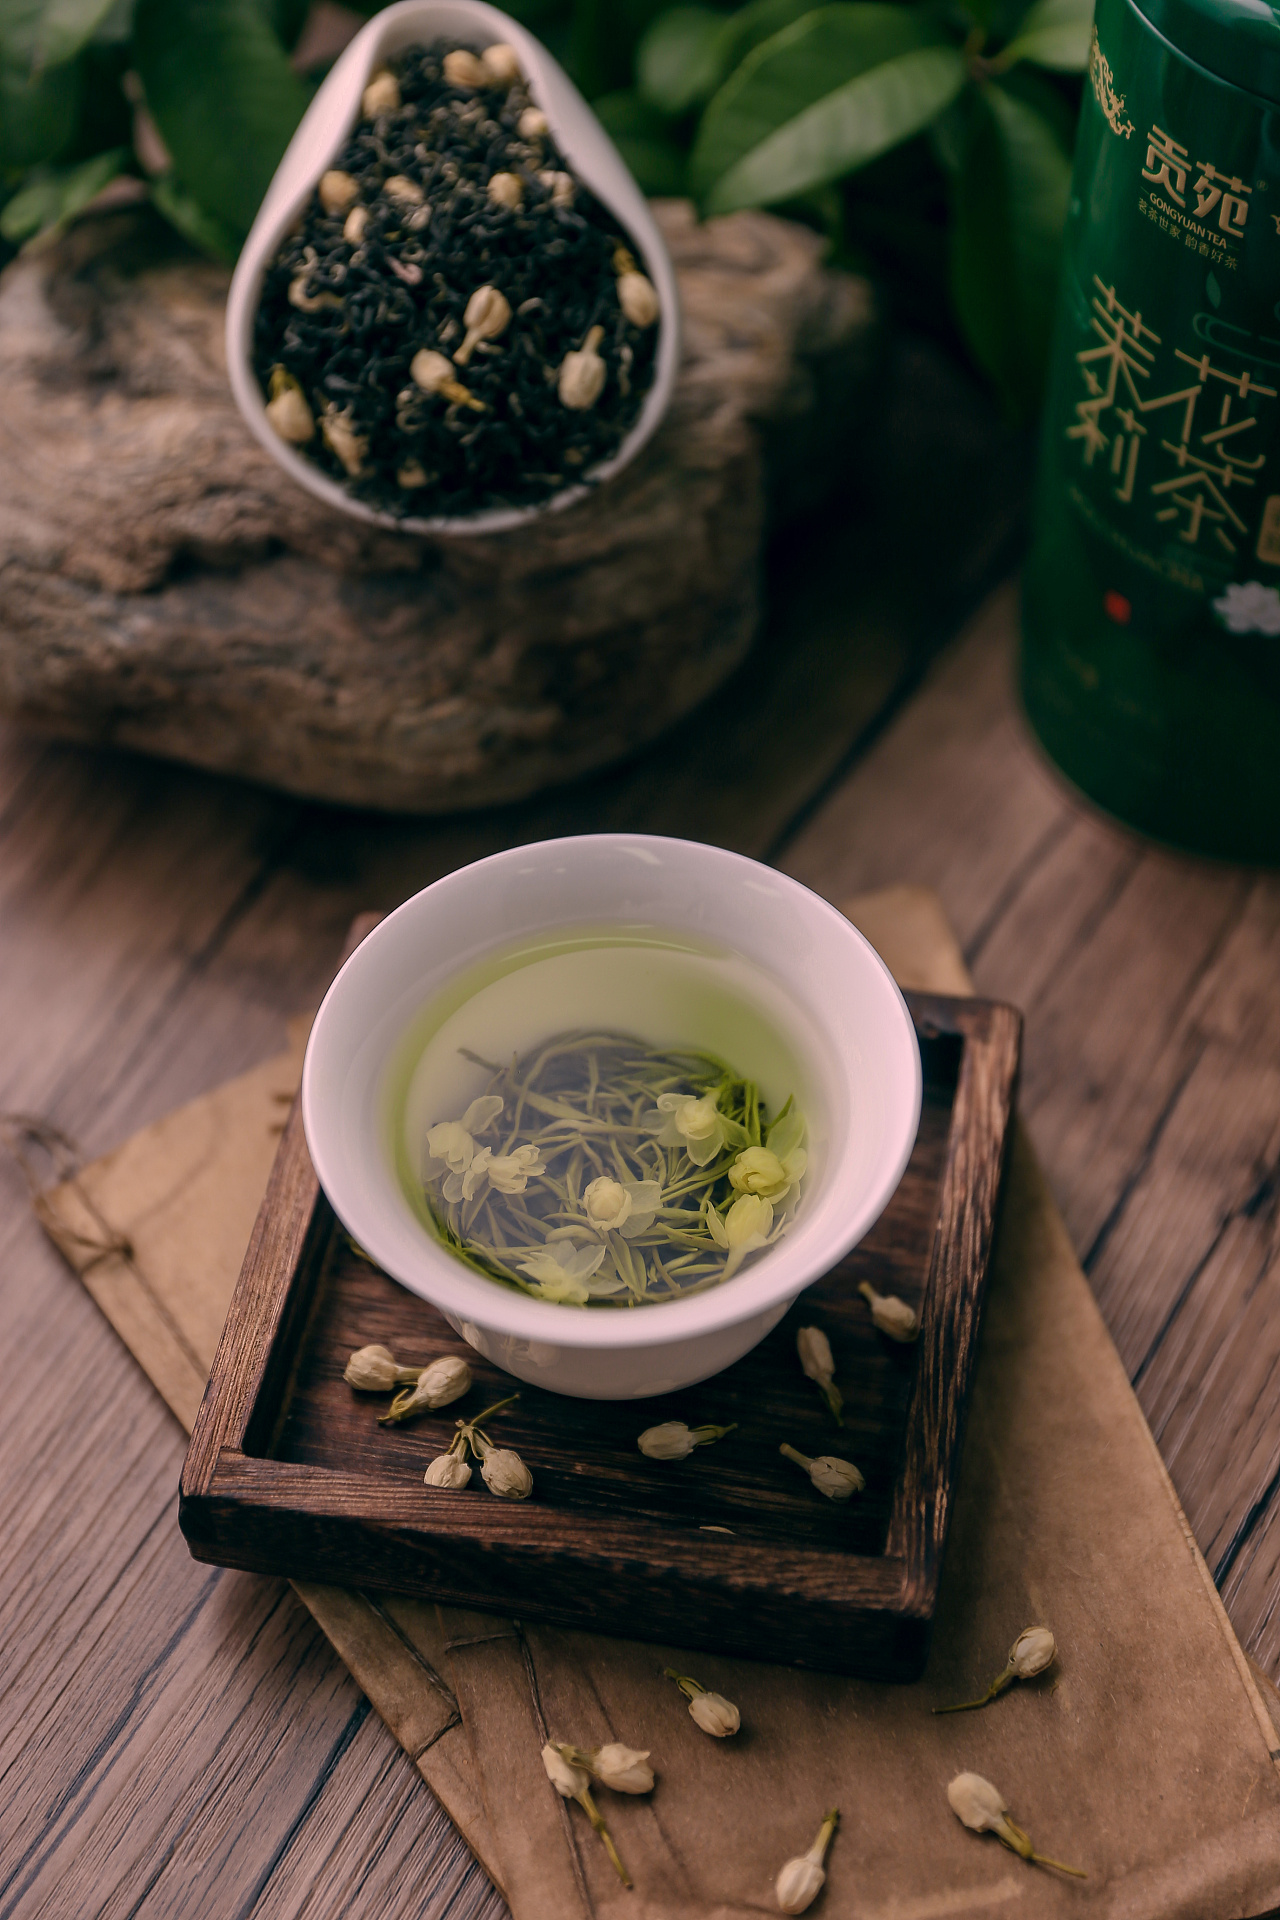 达利申请注册“CHAYOU 茶 U”商标，推出瓶装茶饮新品牌-FoodTalks全球食品资讯